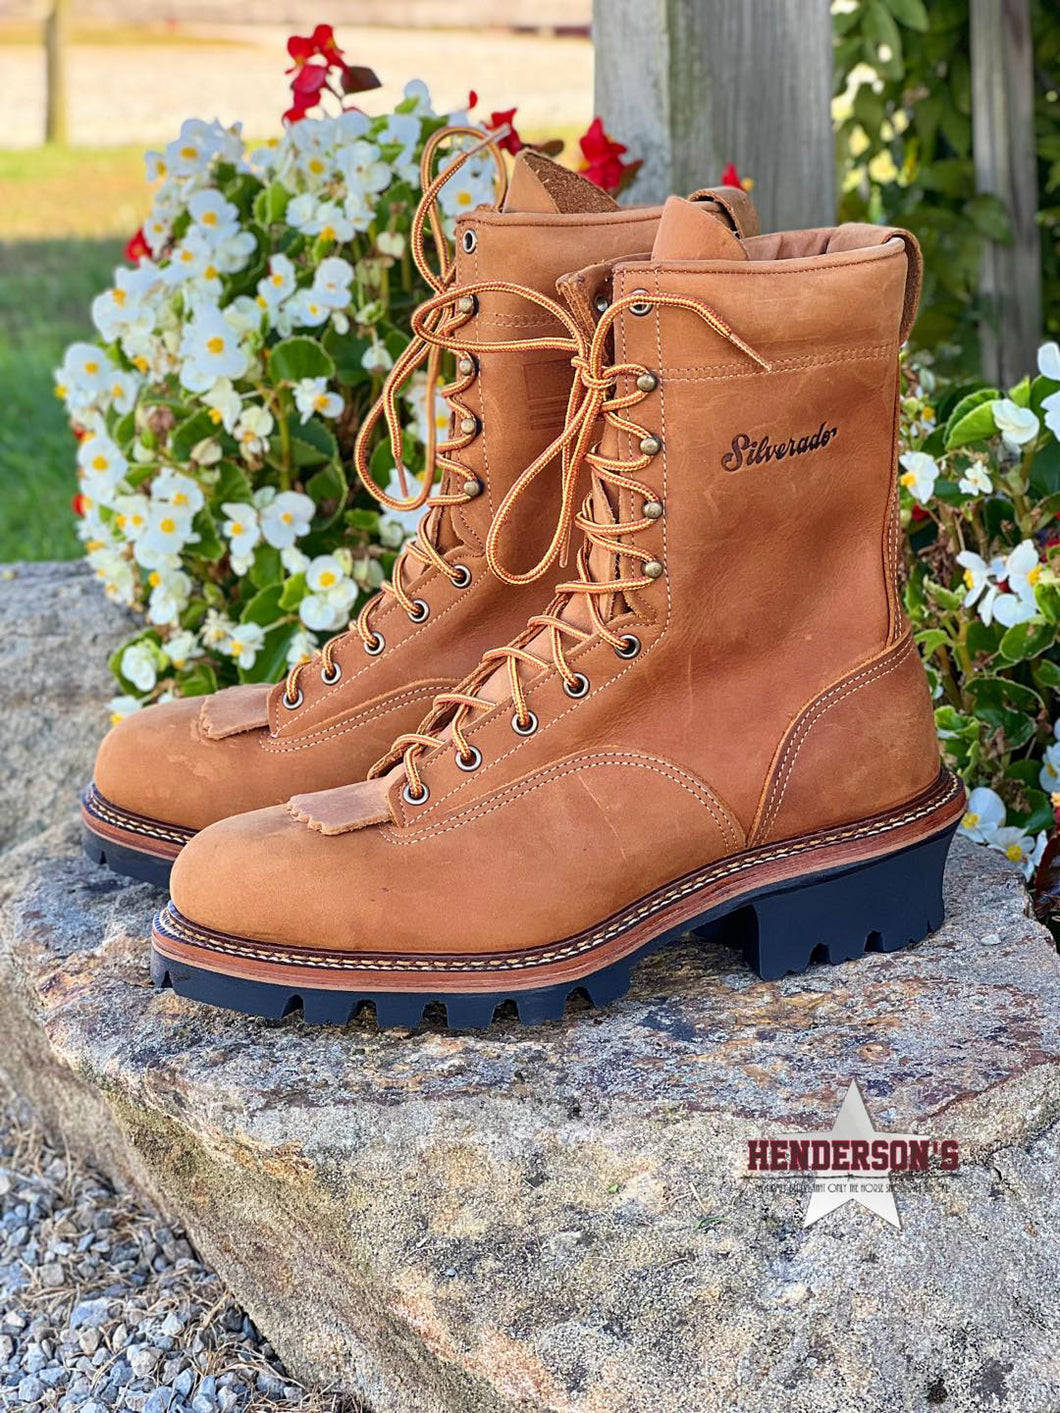 Silverado Logger Boots ~ Steel Toe - Henderson's Western Store